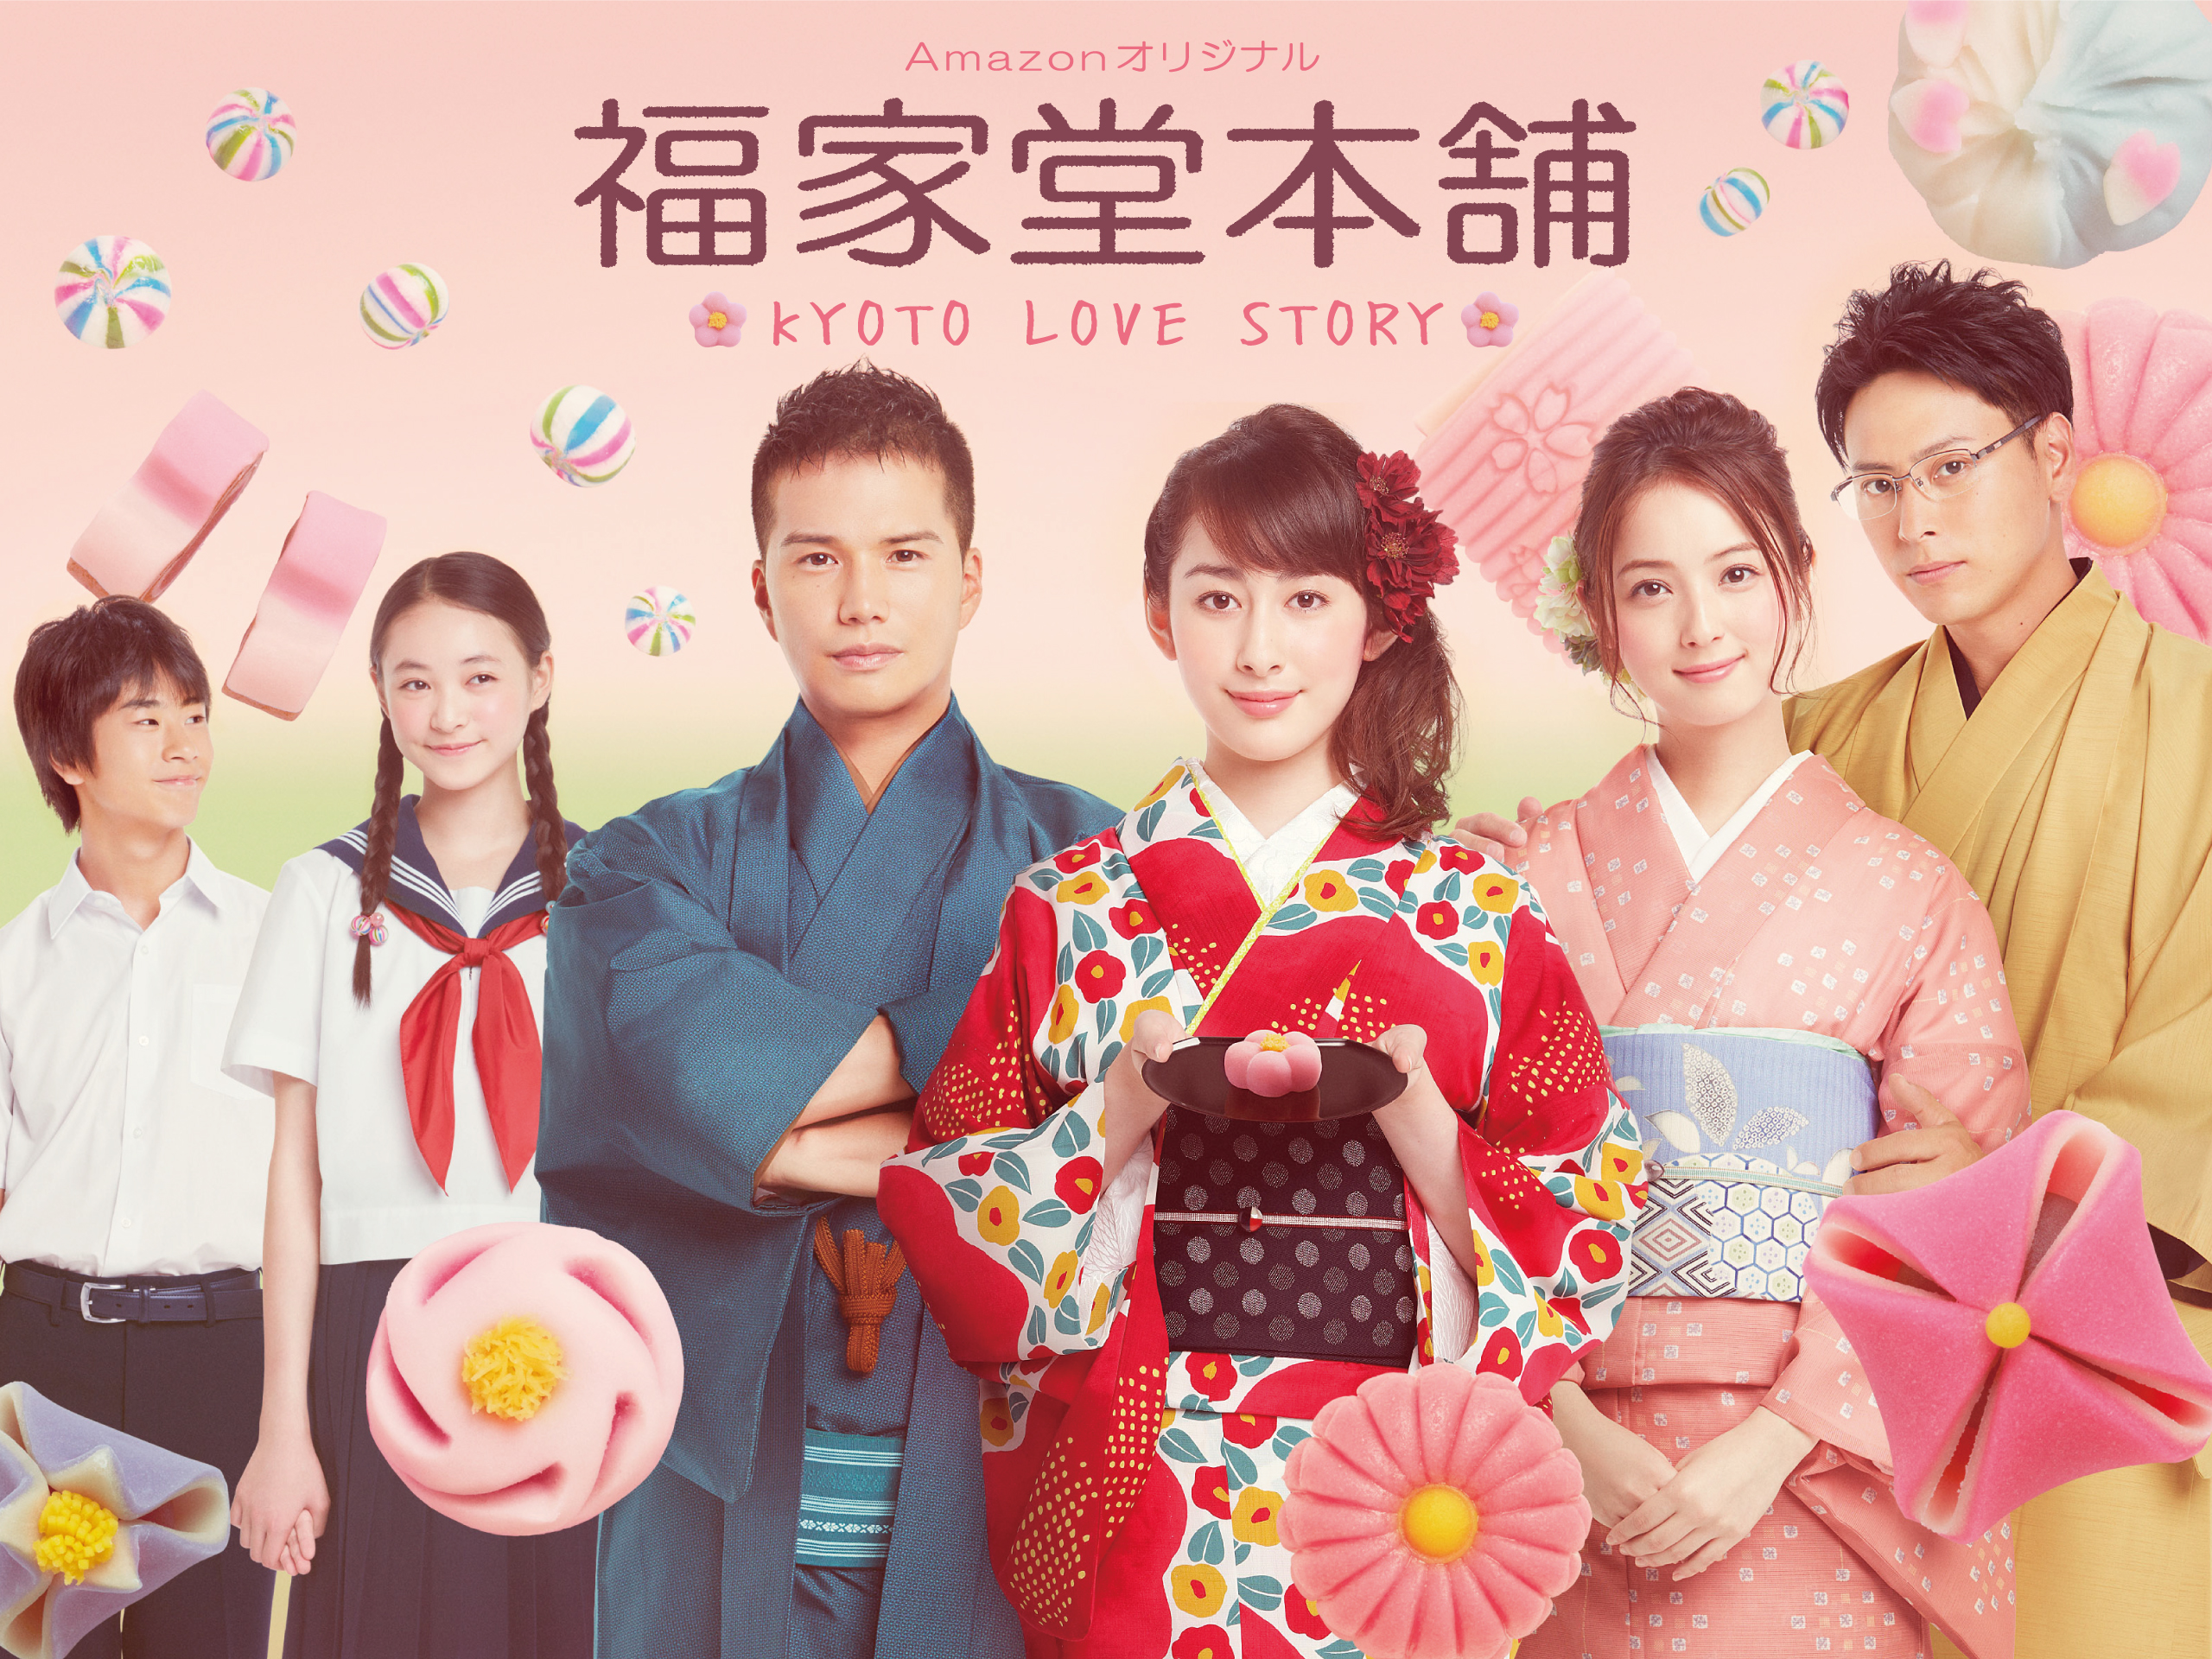 Amazonオリジナル 福家堂本舗 Kyoto Love Story を無料視聴 感想と作品紹介 えいじろん